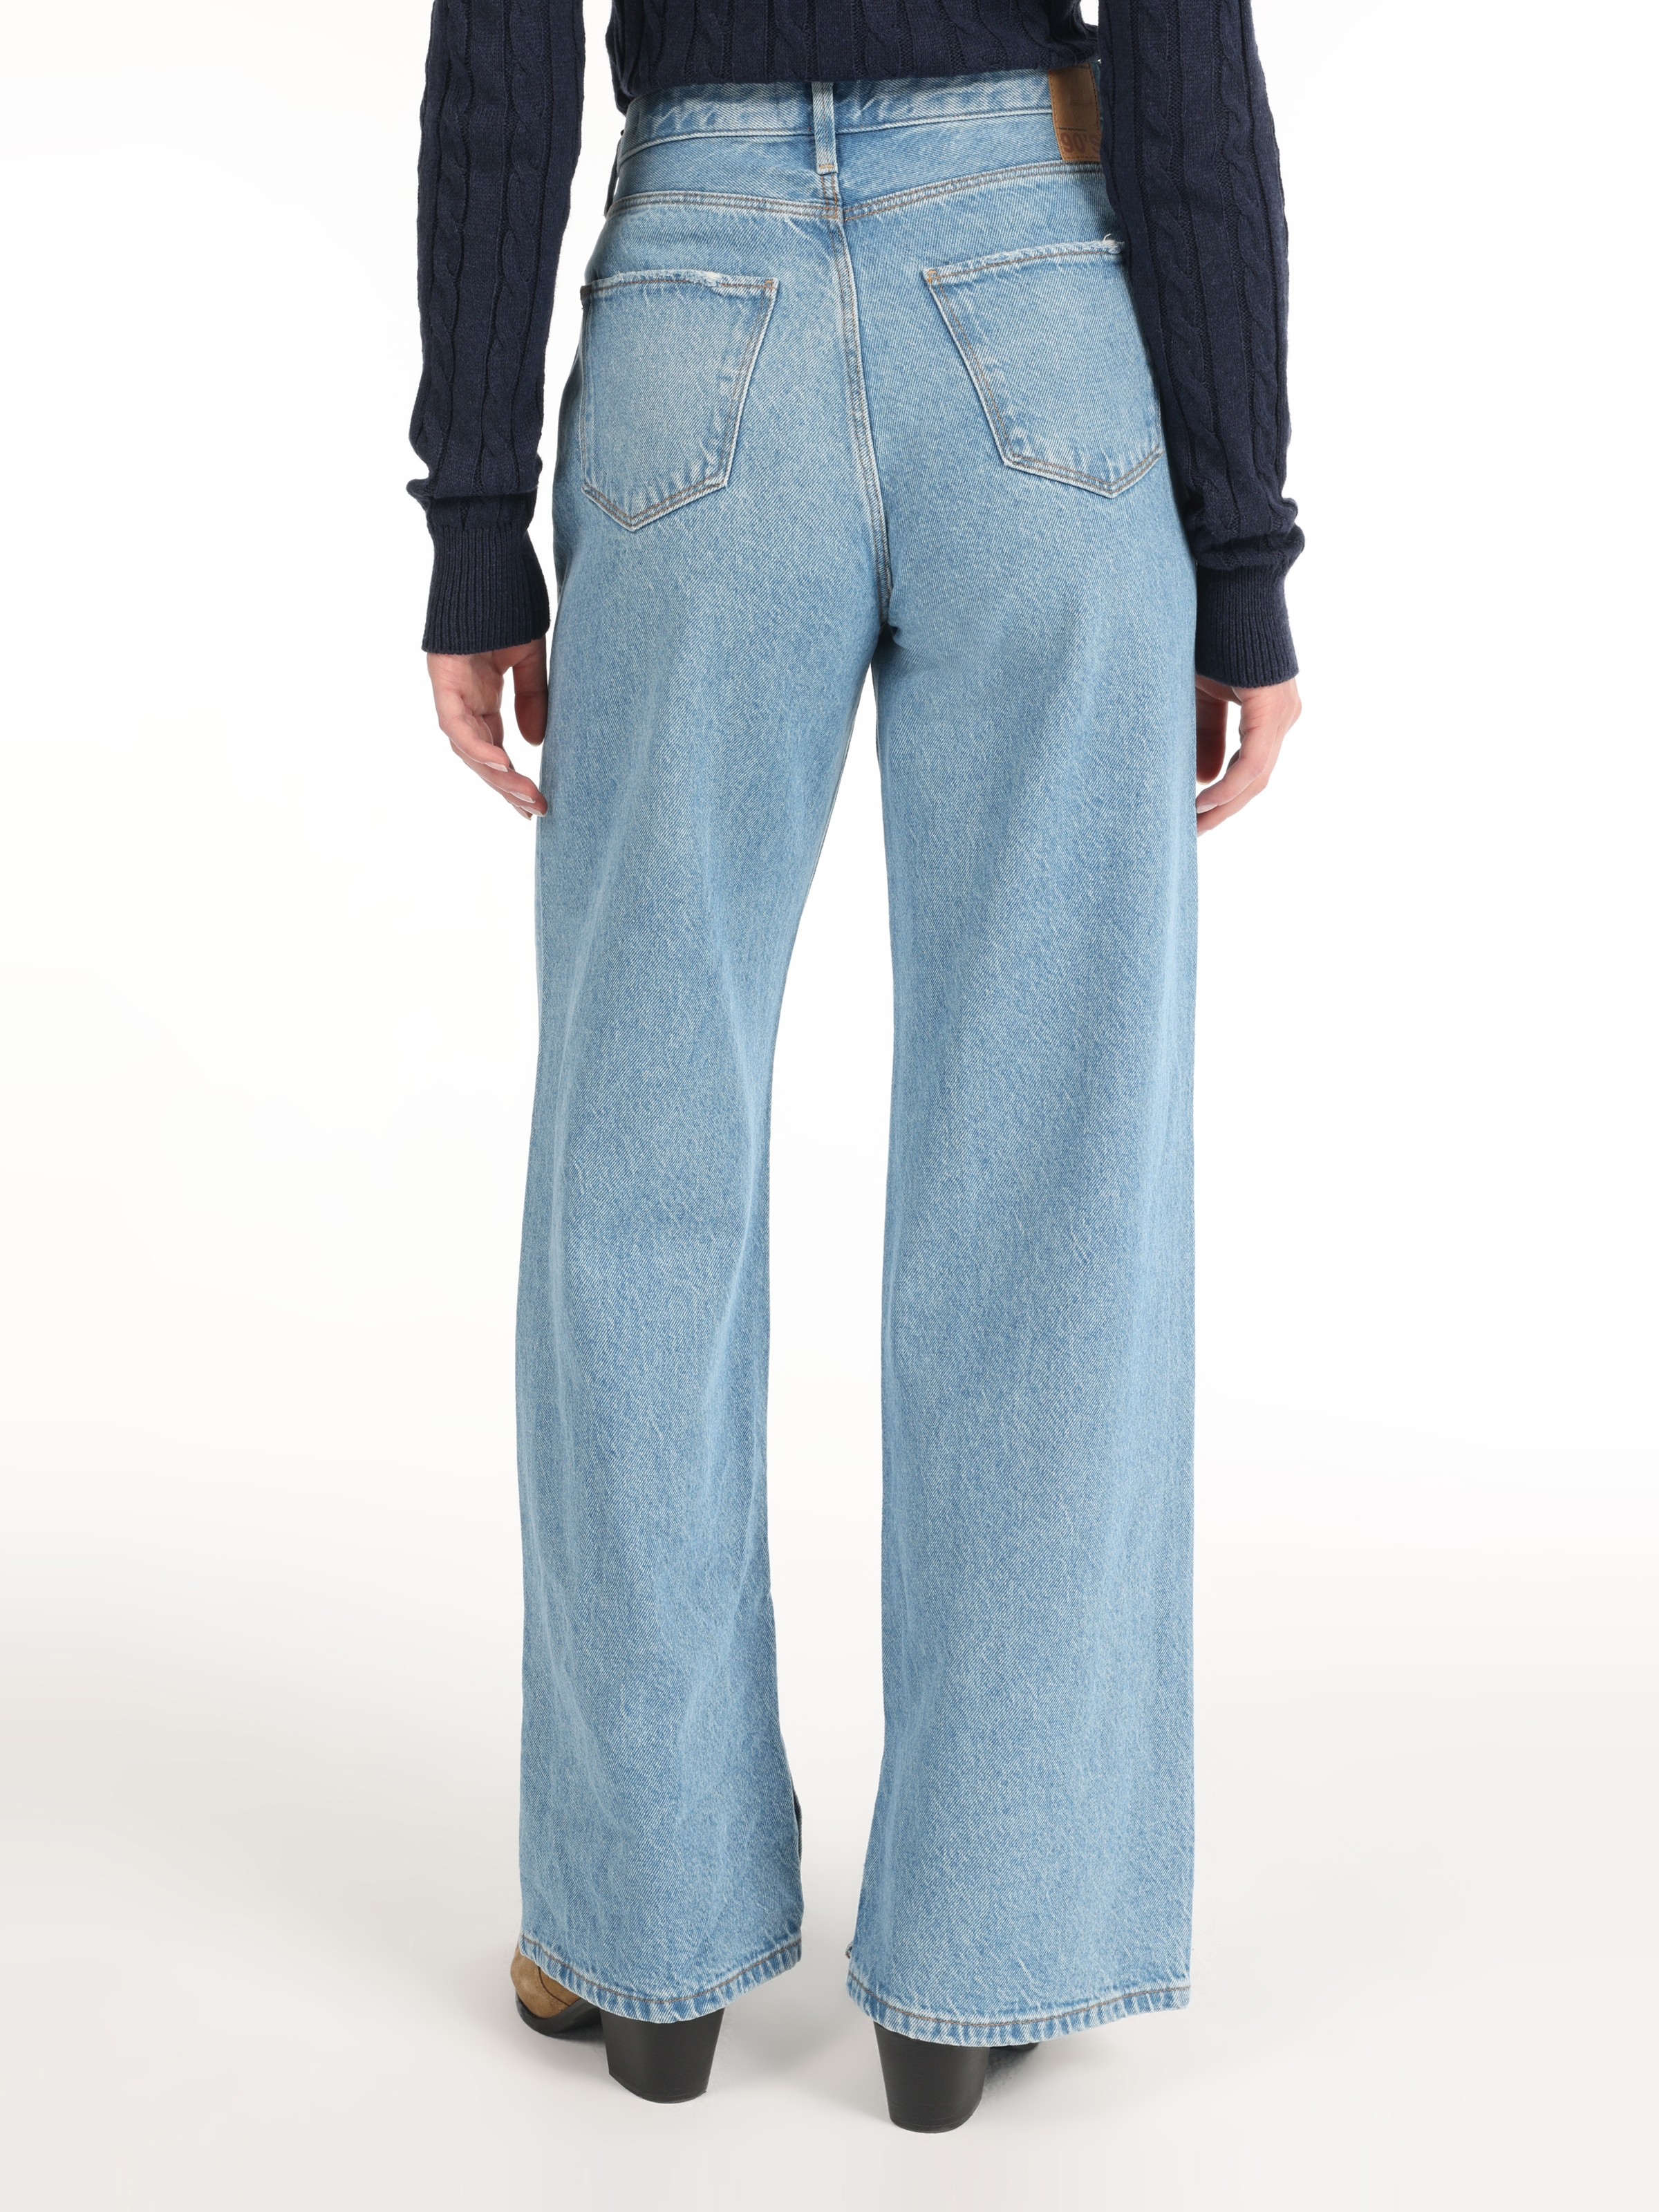 Afficher les détails de Pantalon Femme 970 Berry Regular Fit Taille Haute Jambe Large Bleu